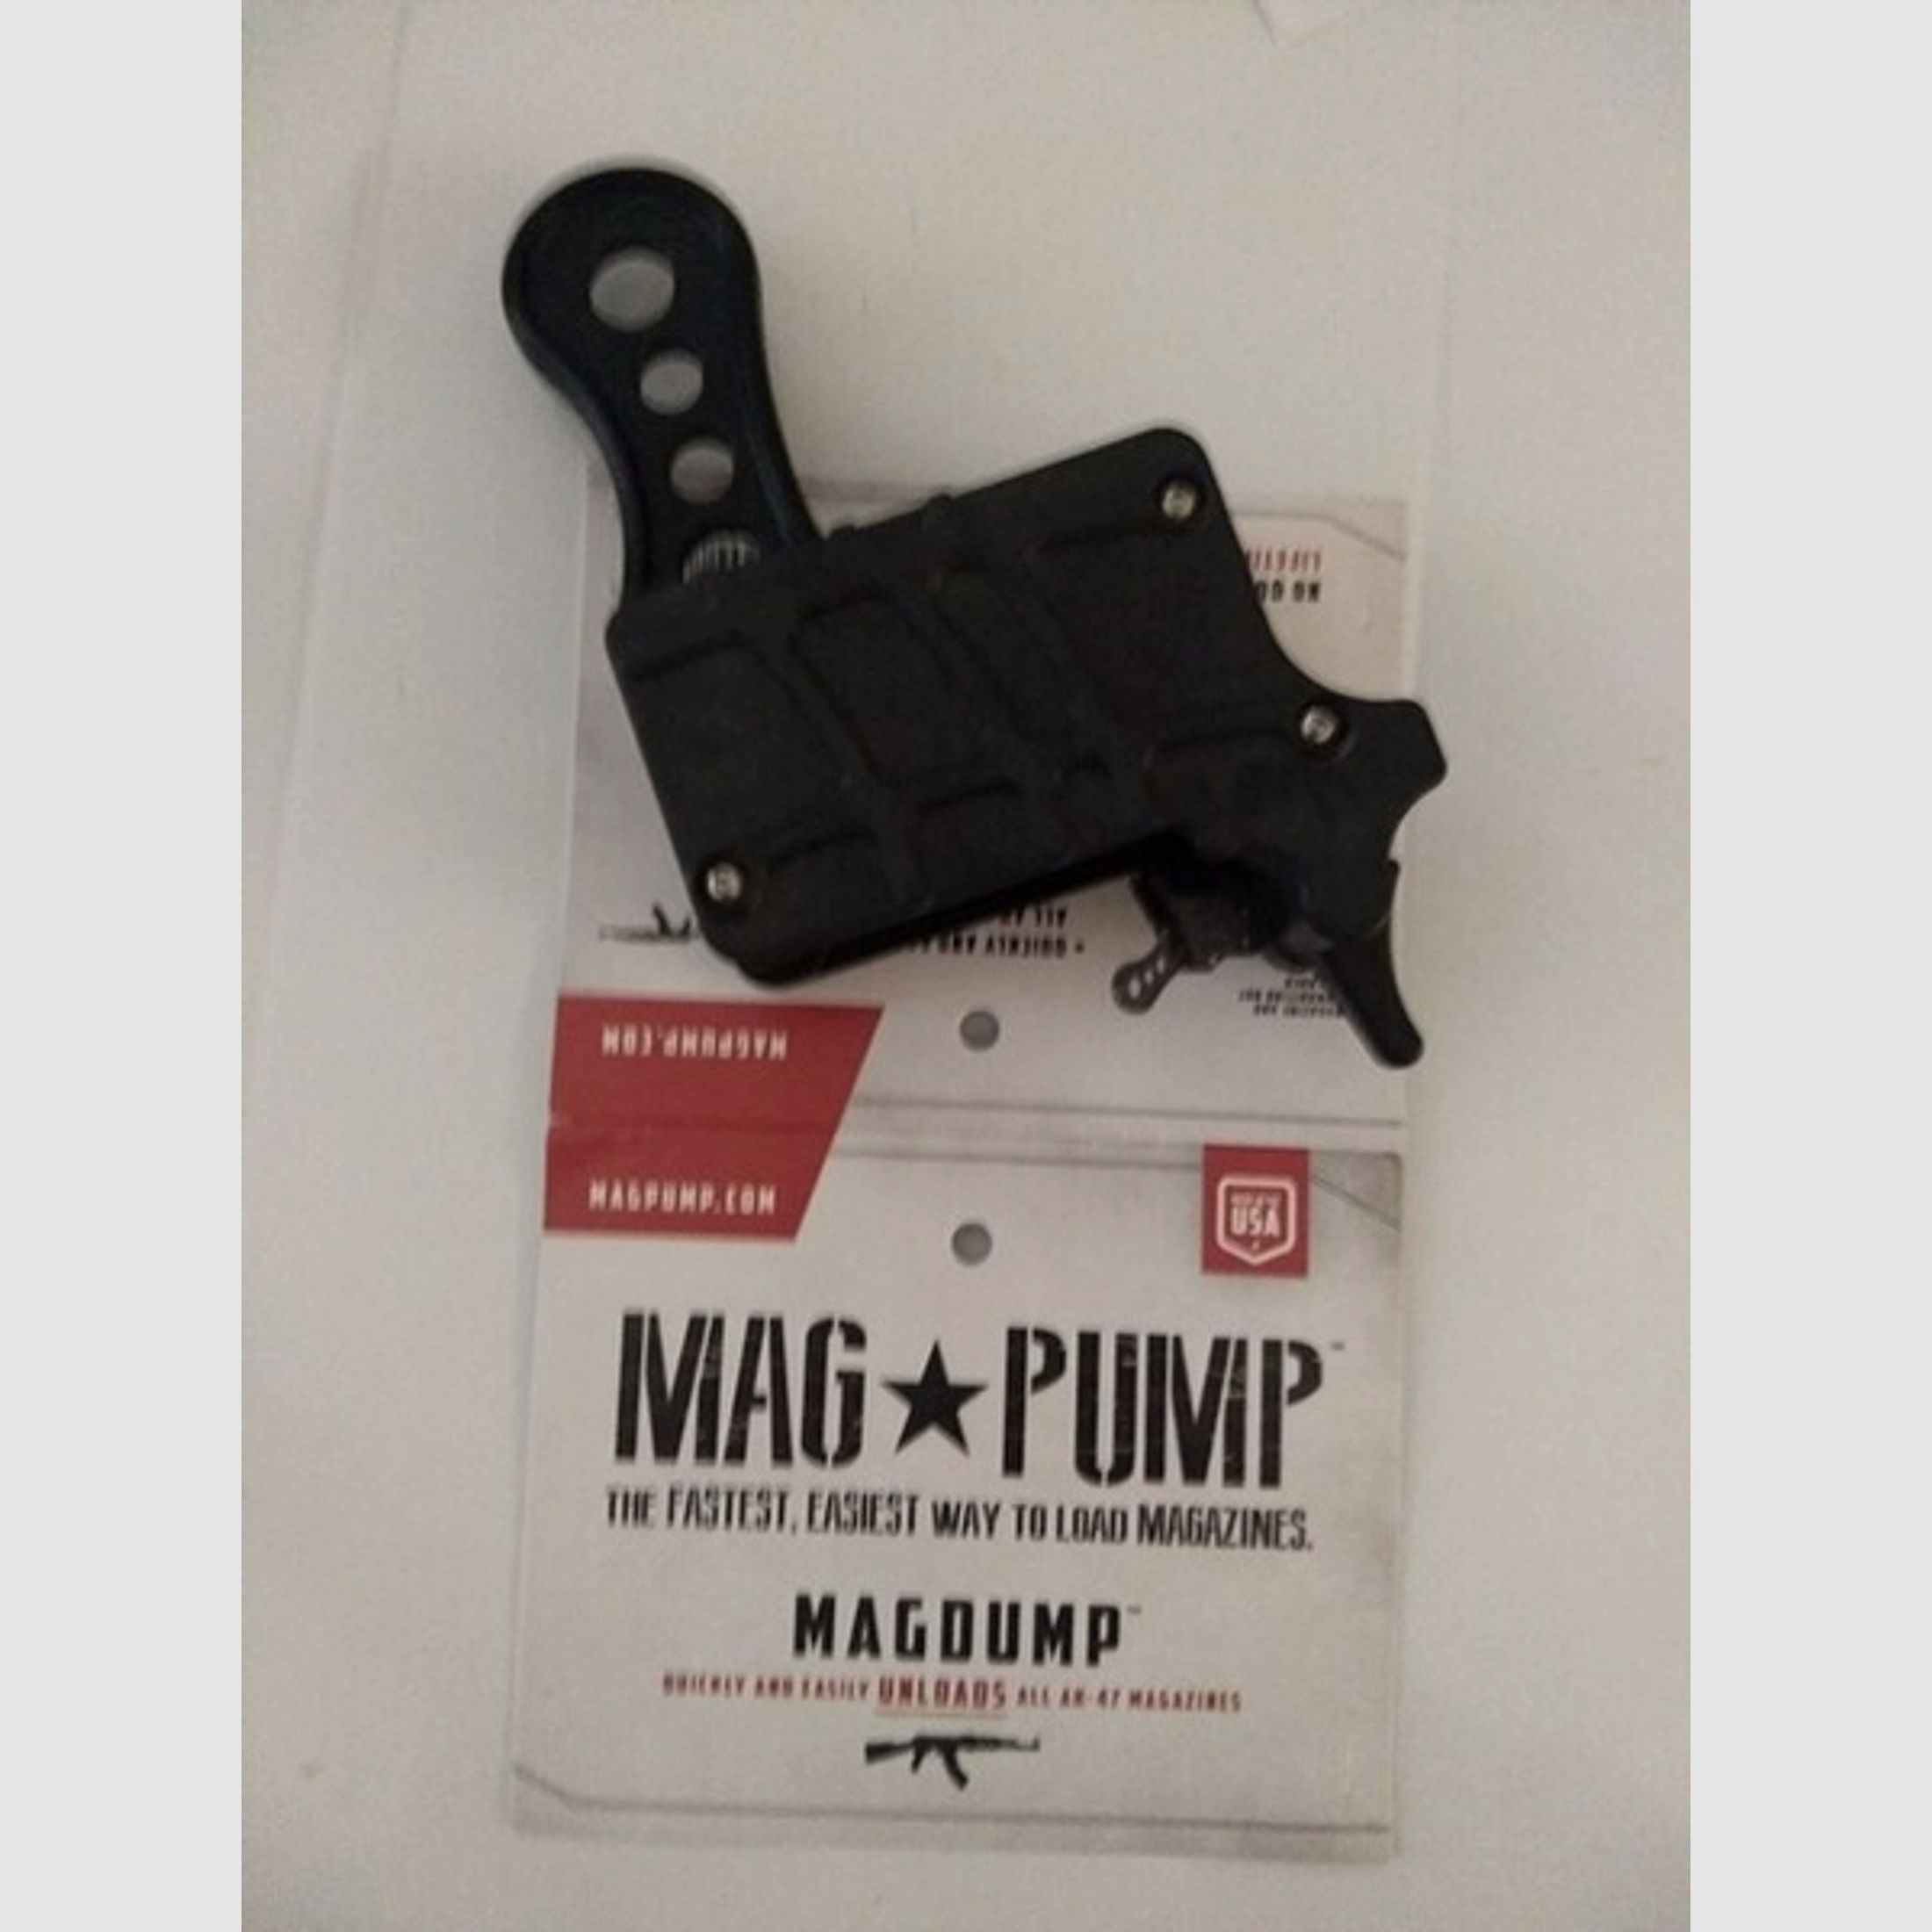 Magpump AK-47 Magazin entlader AK47 Kalaschnikow 7,62x39 50% Rabatt